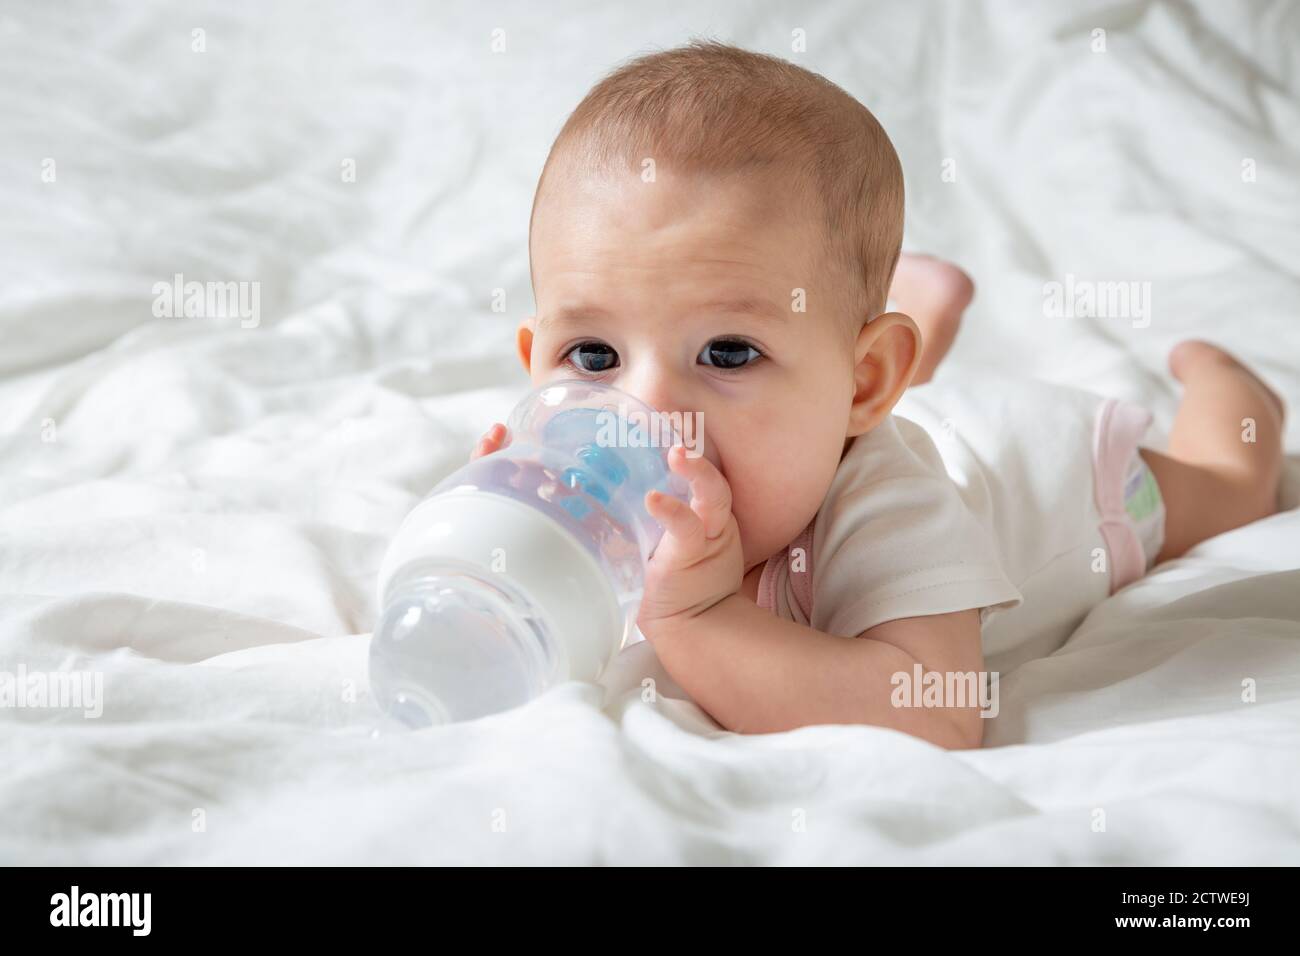 Bébé avec de grands yeux bruns allongé sur le lit blanc avec une bouteille d'eau spéciale avec mamelon. Essaie de la ronger Banque D'Images